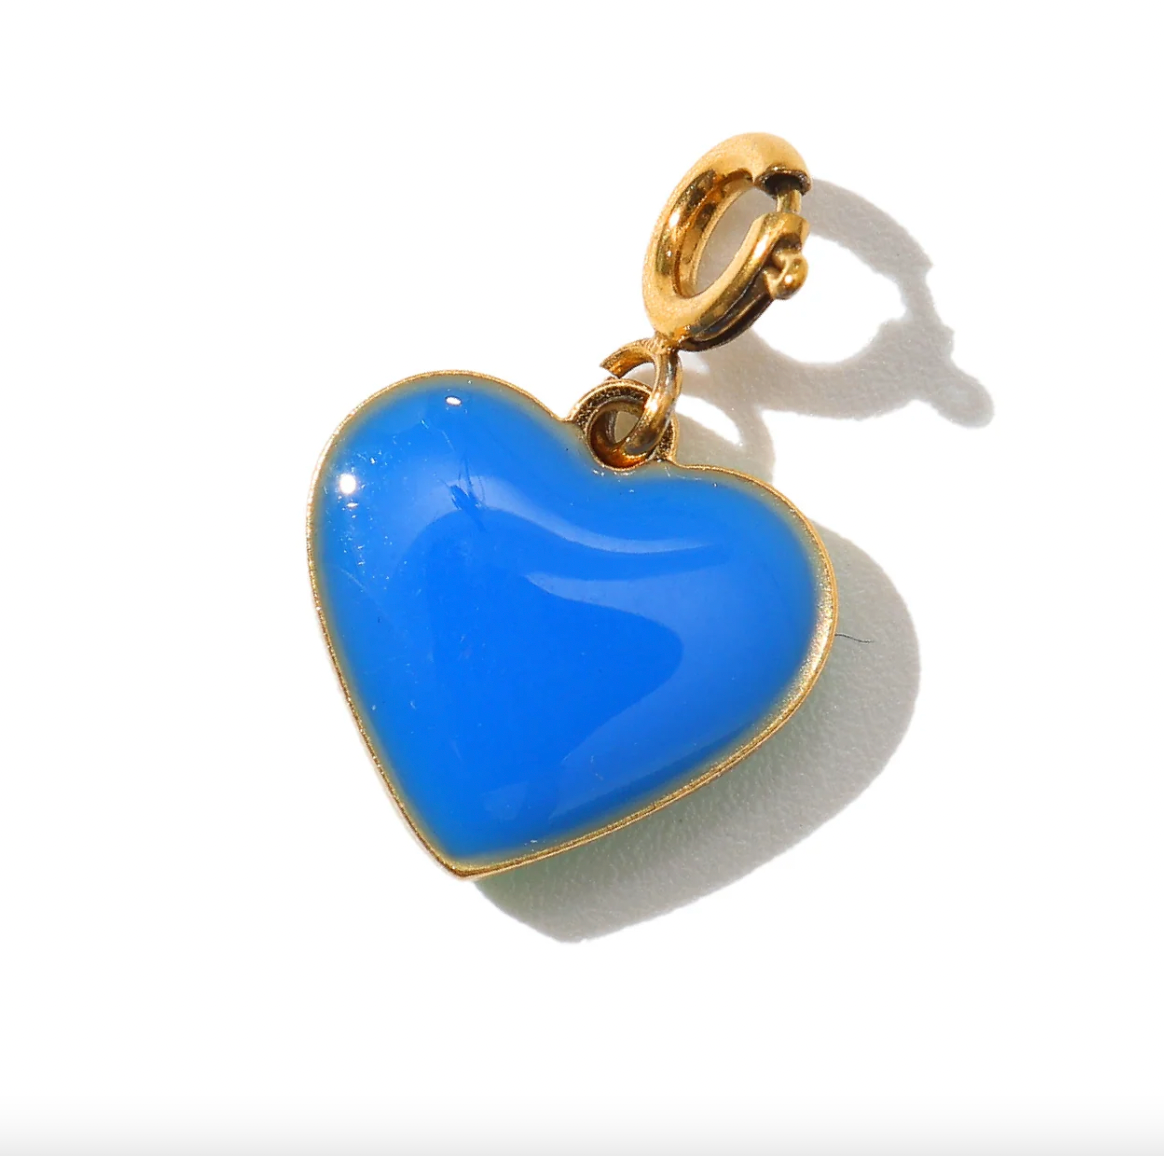 Matter Matters Humble Heart Necklace • Green & Cobalt